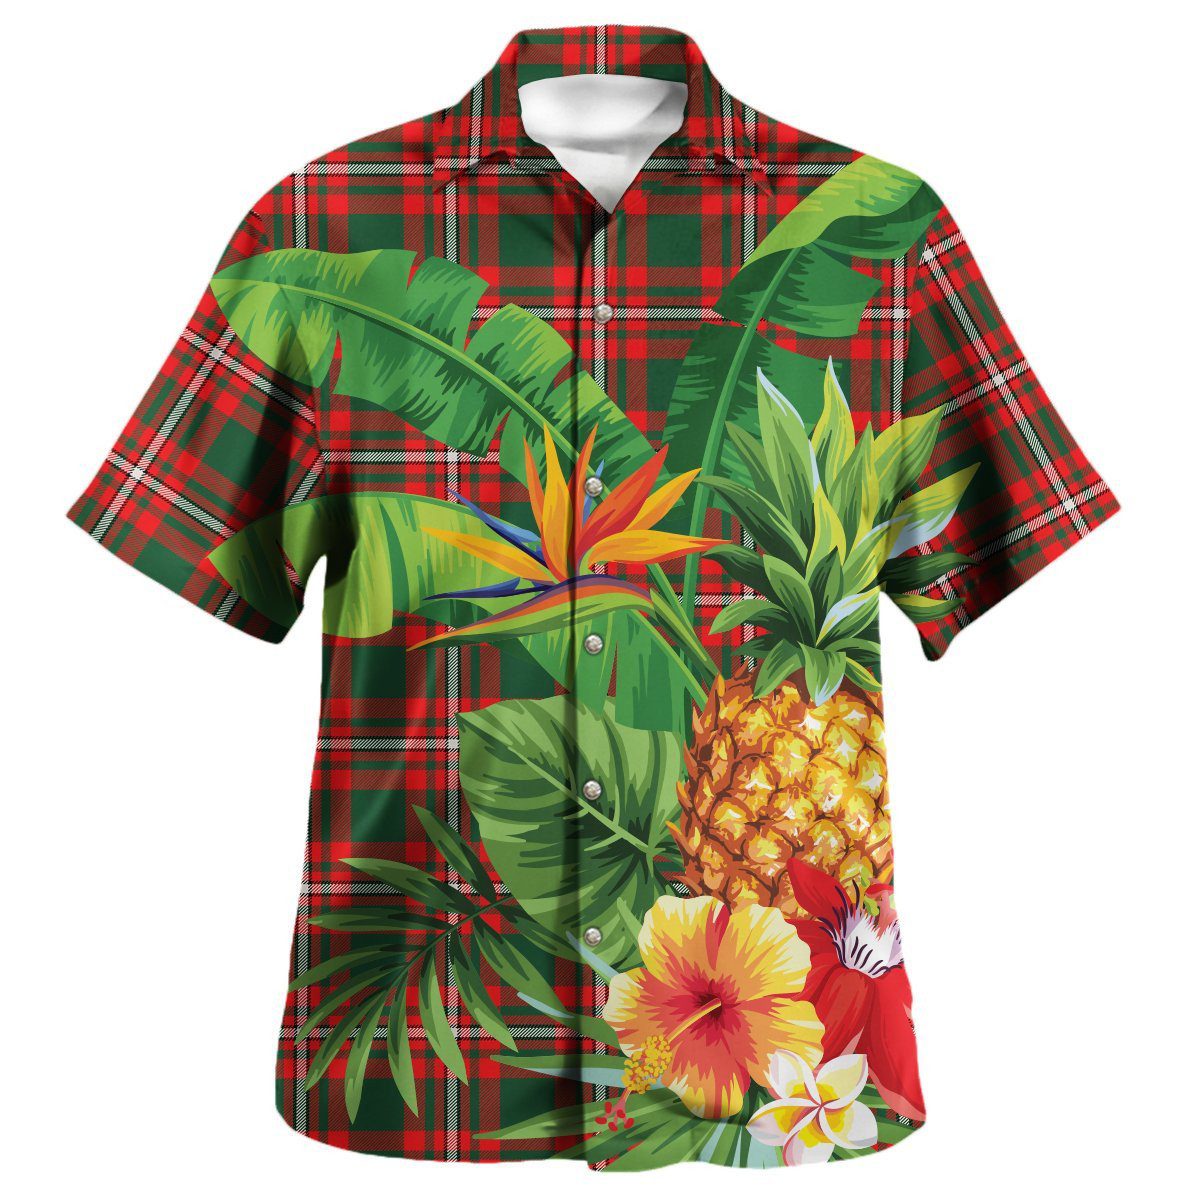 Princess Margaret Tartan Aloha Shirt version 2